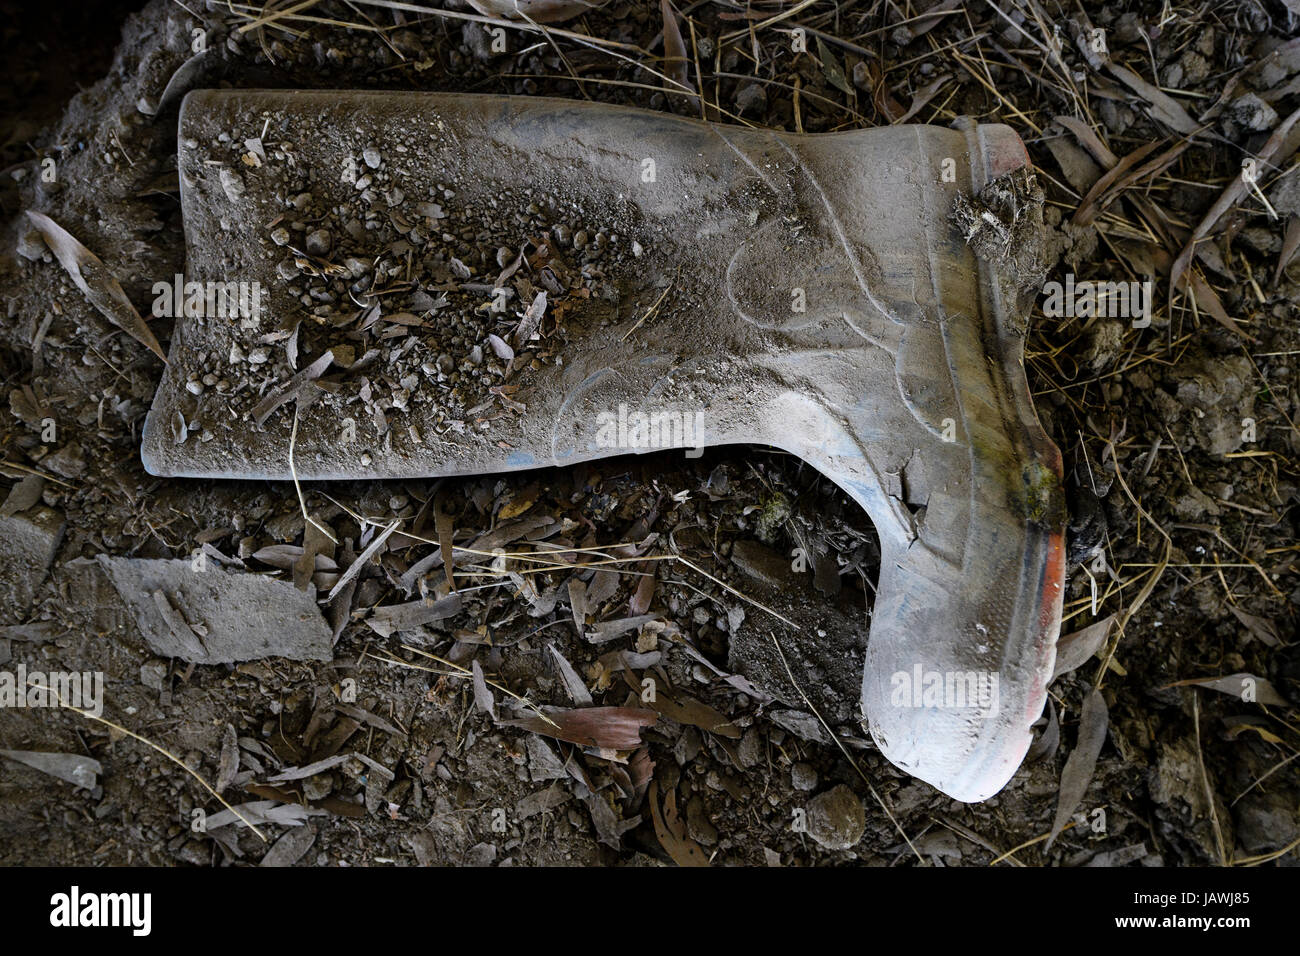 Un vieux gum boot échassier dans la poussière d'une ferme abandonnée. Banque D'Images